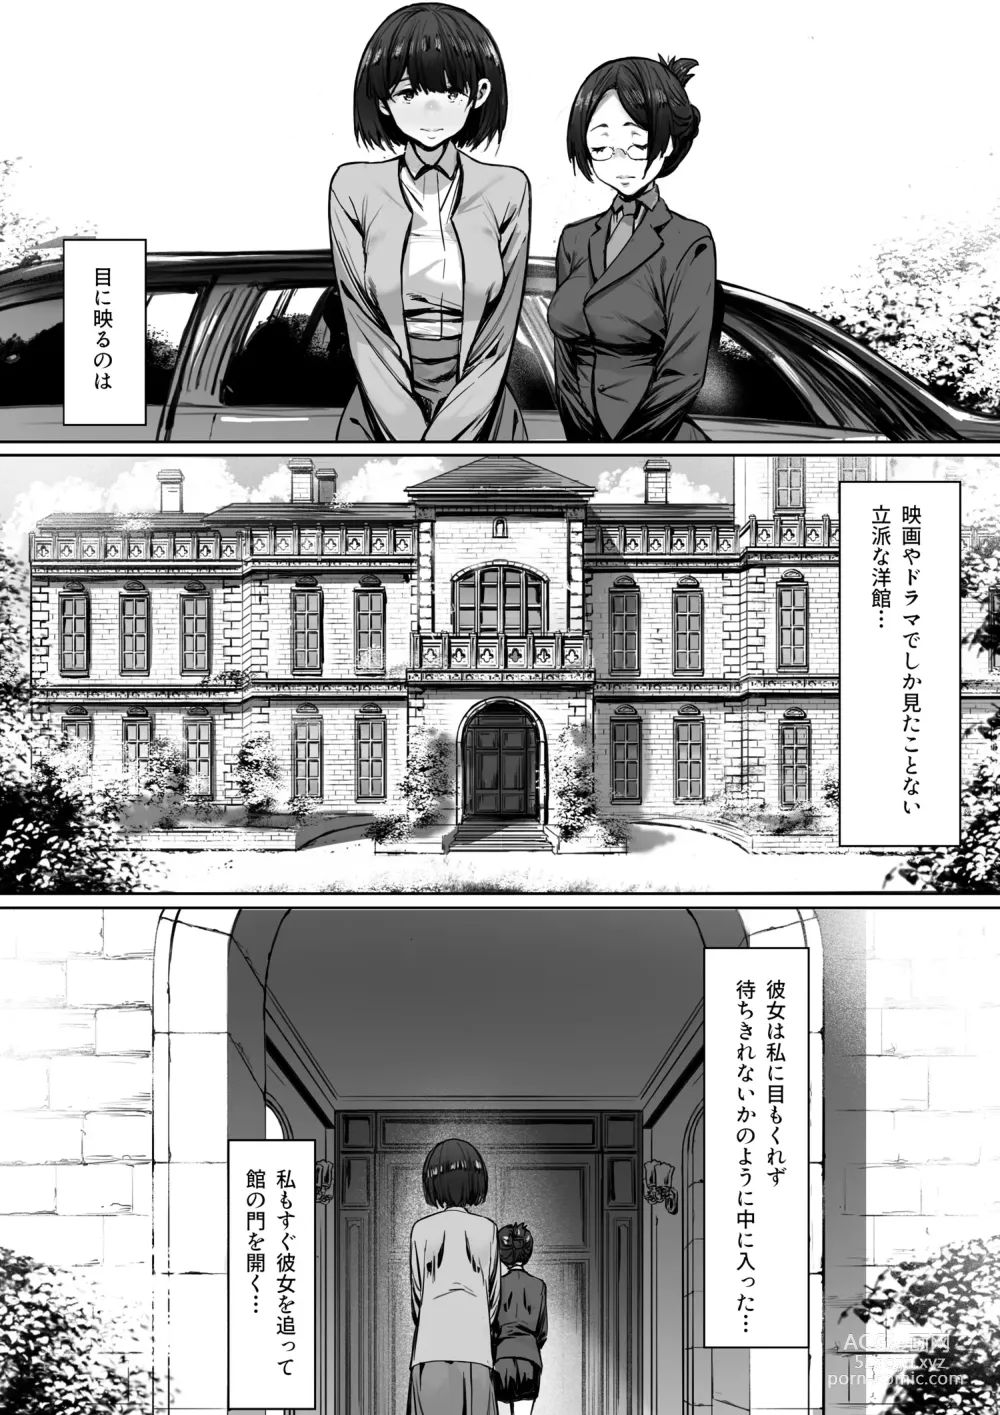 Page 11 of doujinshi Dorei kibou  Nozaki Haruna Hen